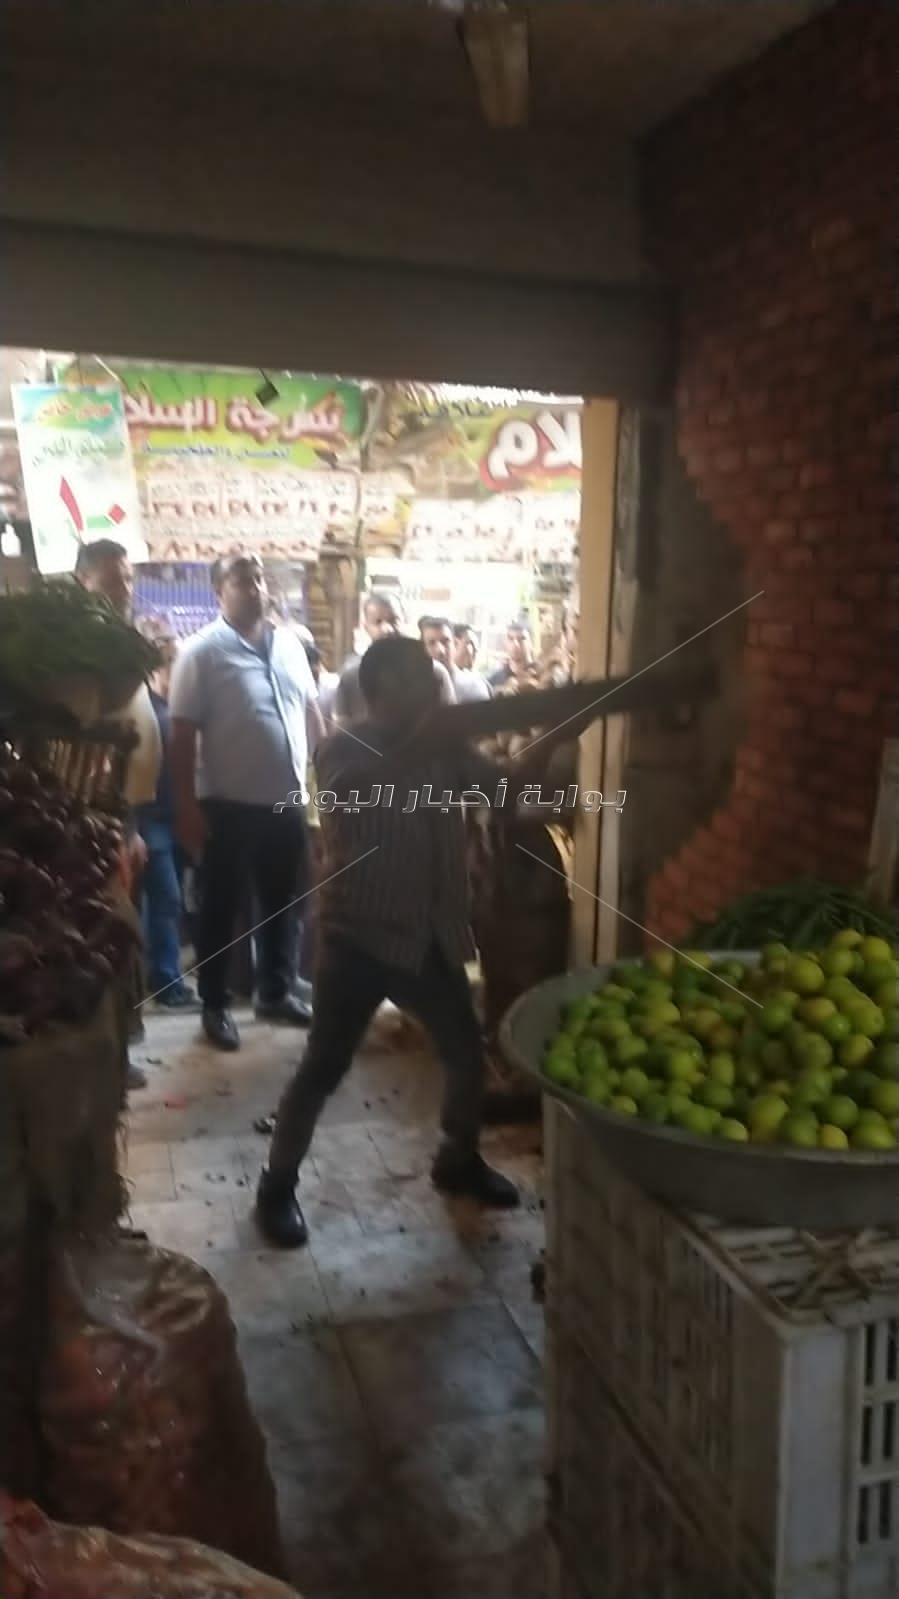 استجابة حي الهرم وإزالة أعمال بناء مخالف لعقار داخل سوق حسن محمد